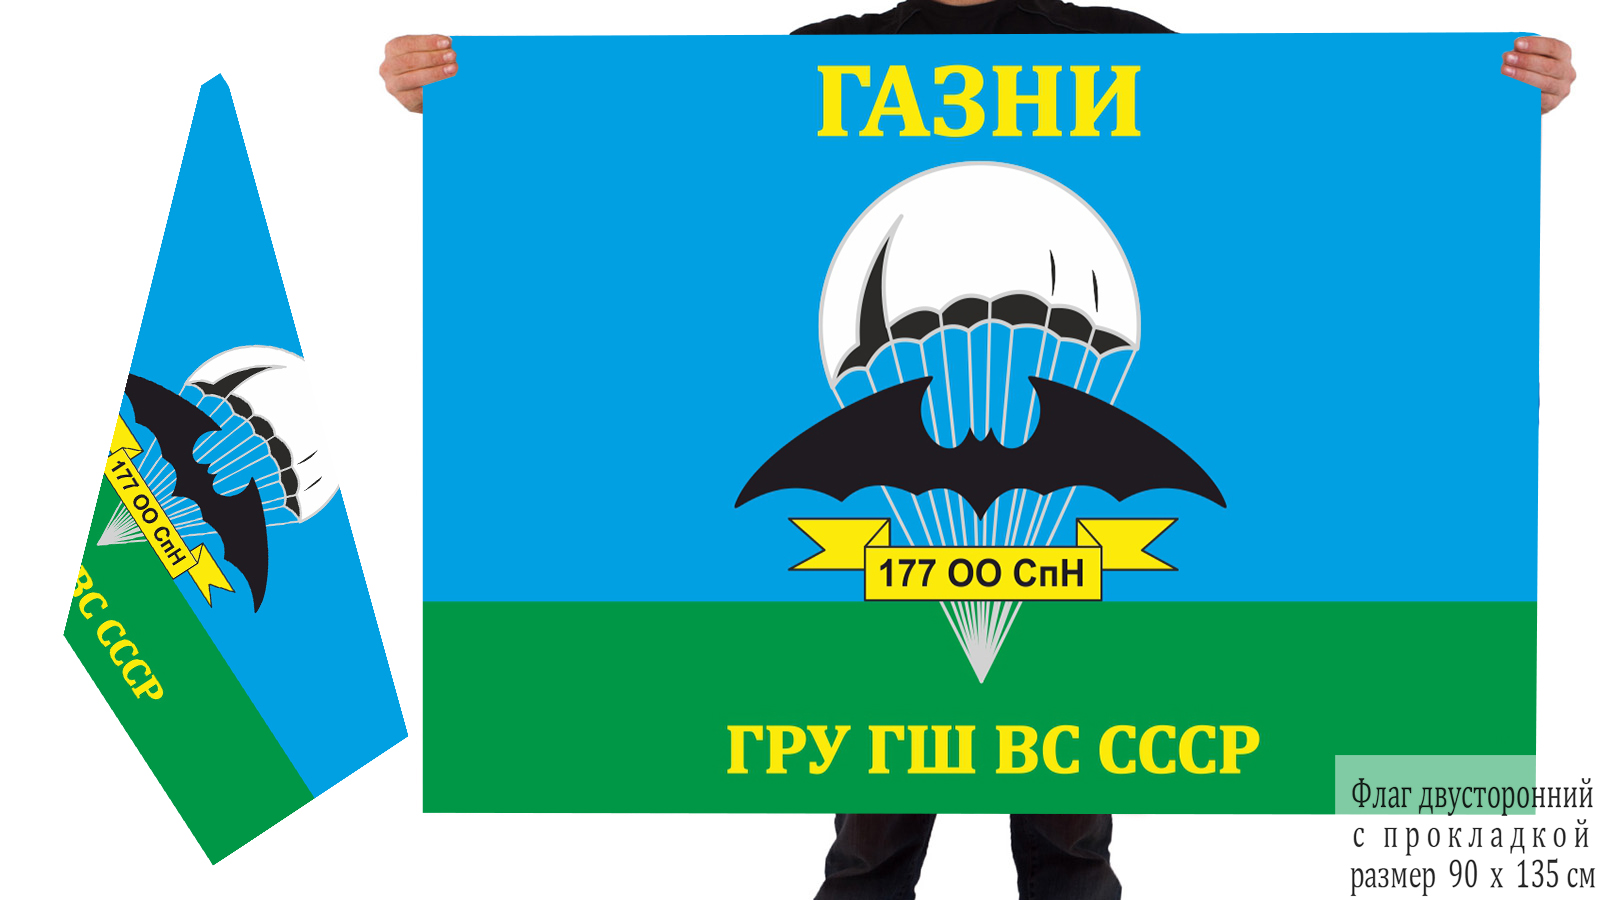 Двусторонний флаг 177 ООСпН ГРУ ГШ ВС СССР